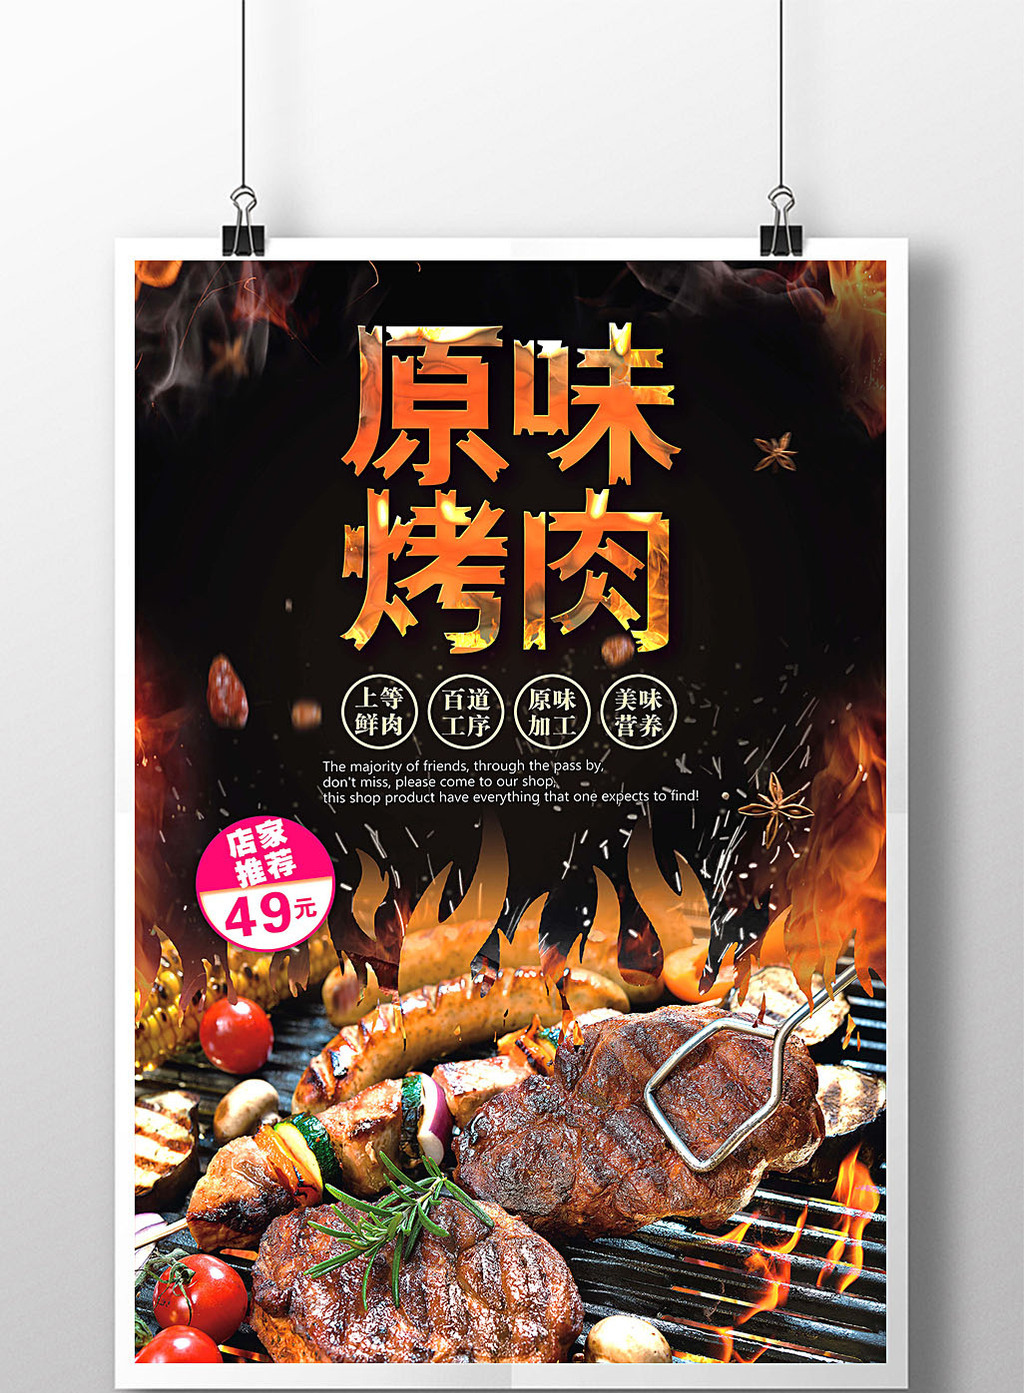 包图 广告设计 海报 【psd】 原味烤肉宣传海报  上传时间2017-04-17